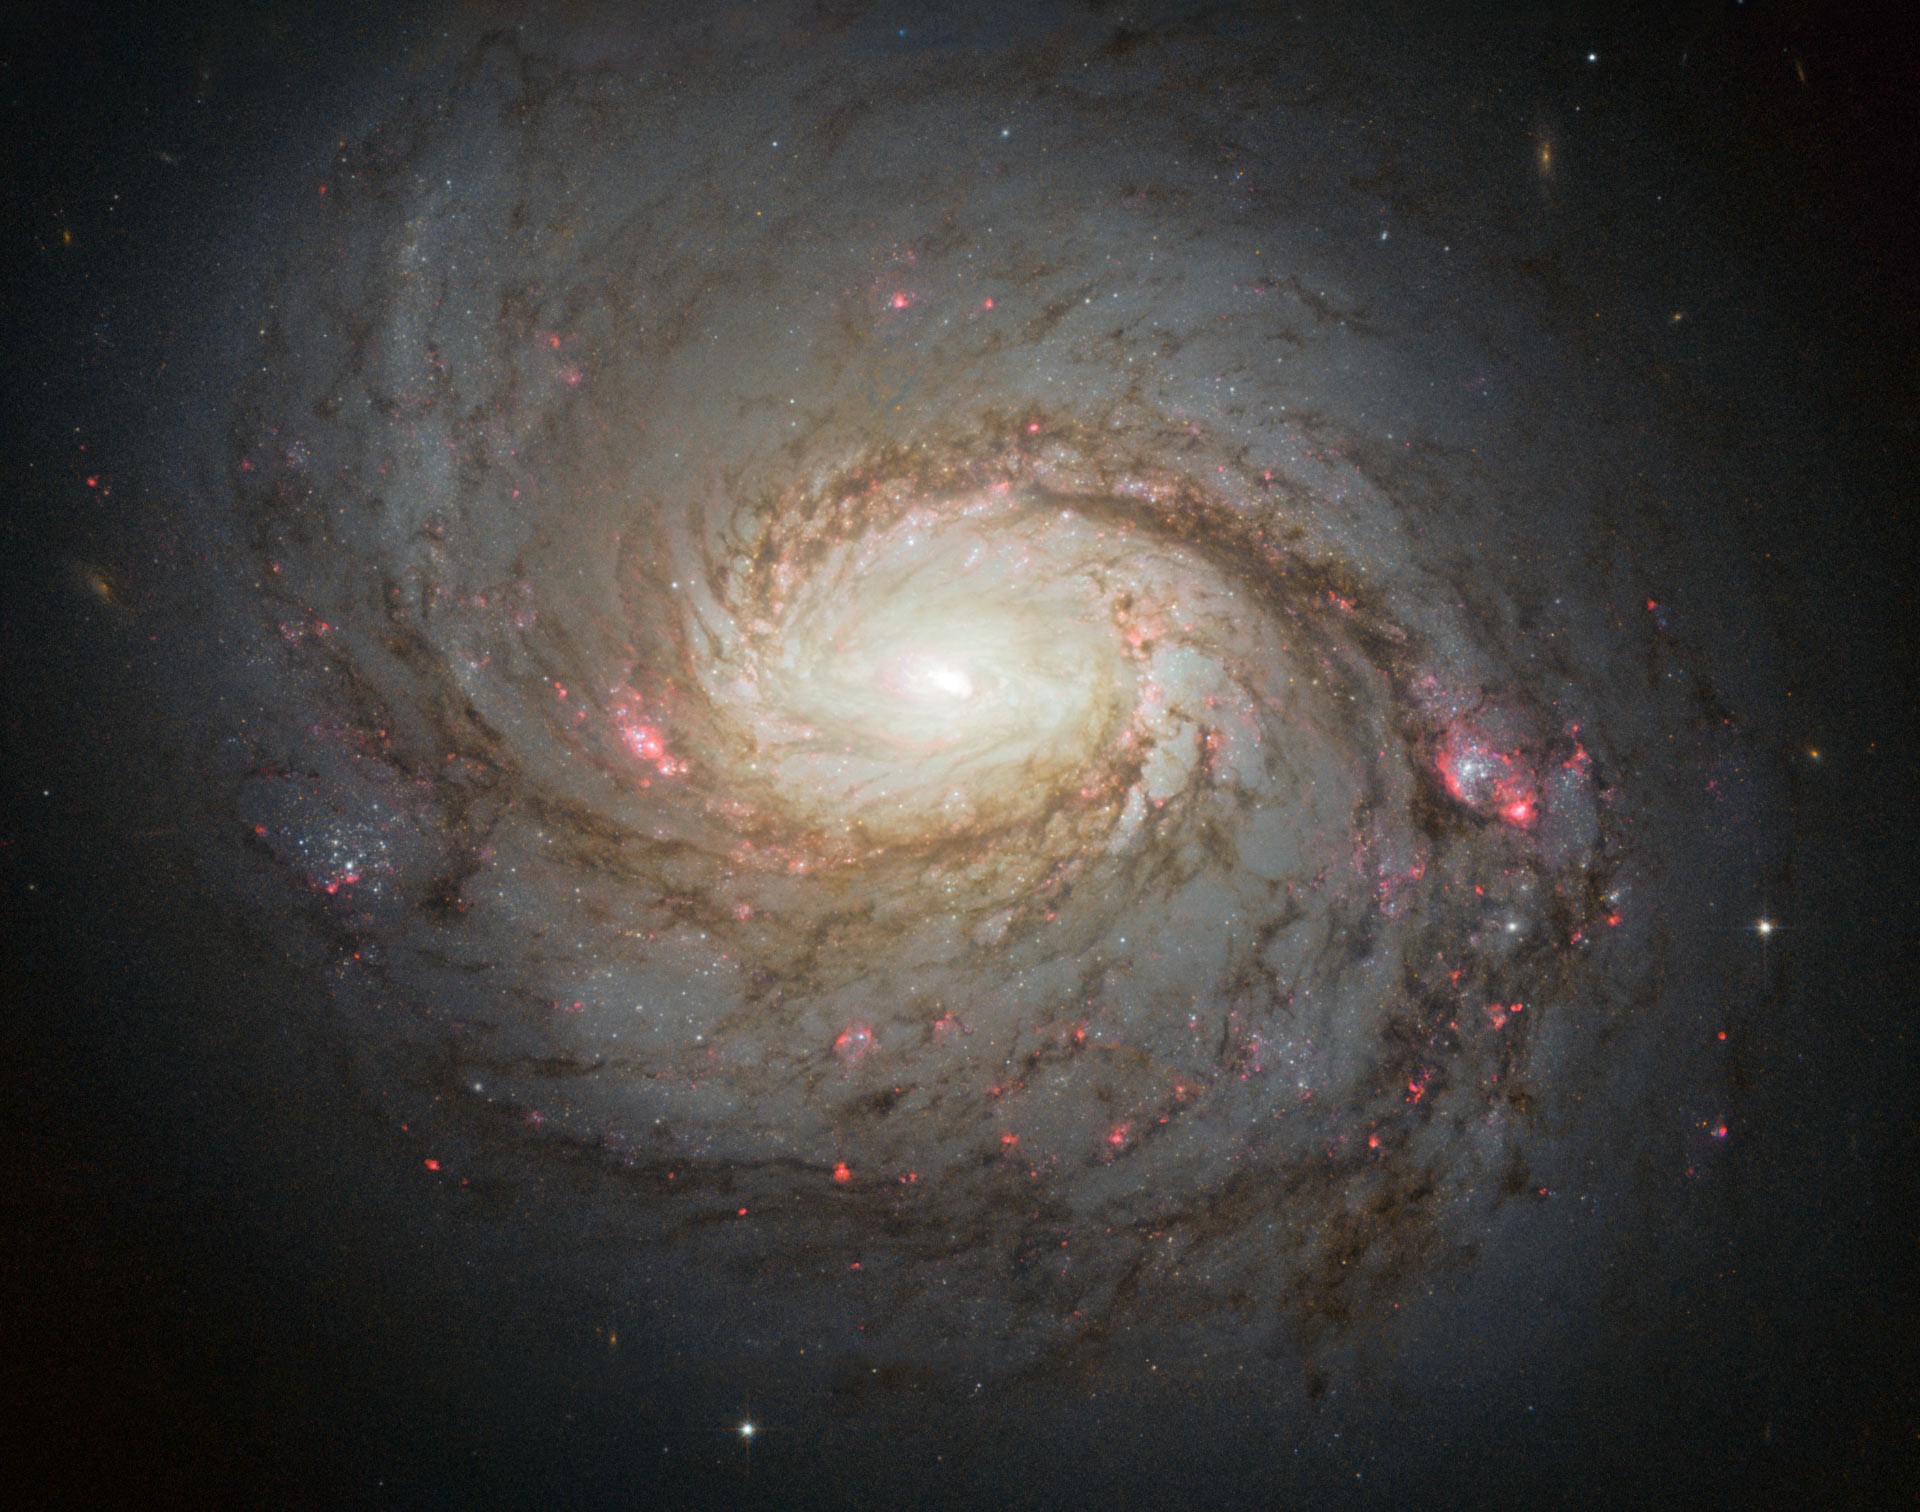 Telescópio Hubble enxerga a galáxia espiral com núcleo ativo NGC 1068 (Foto: NASA/ESA/A. van der Hoeven)